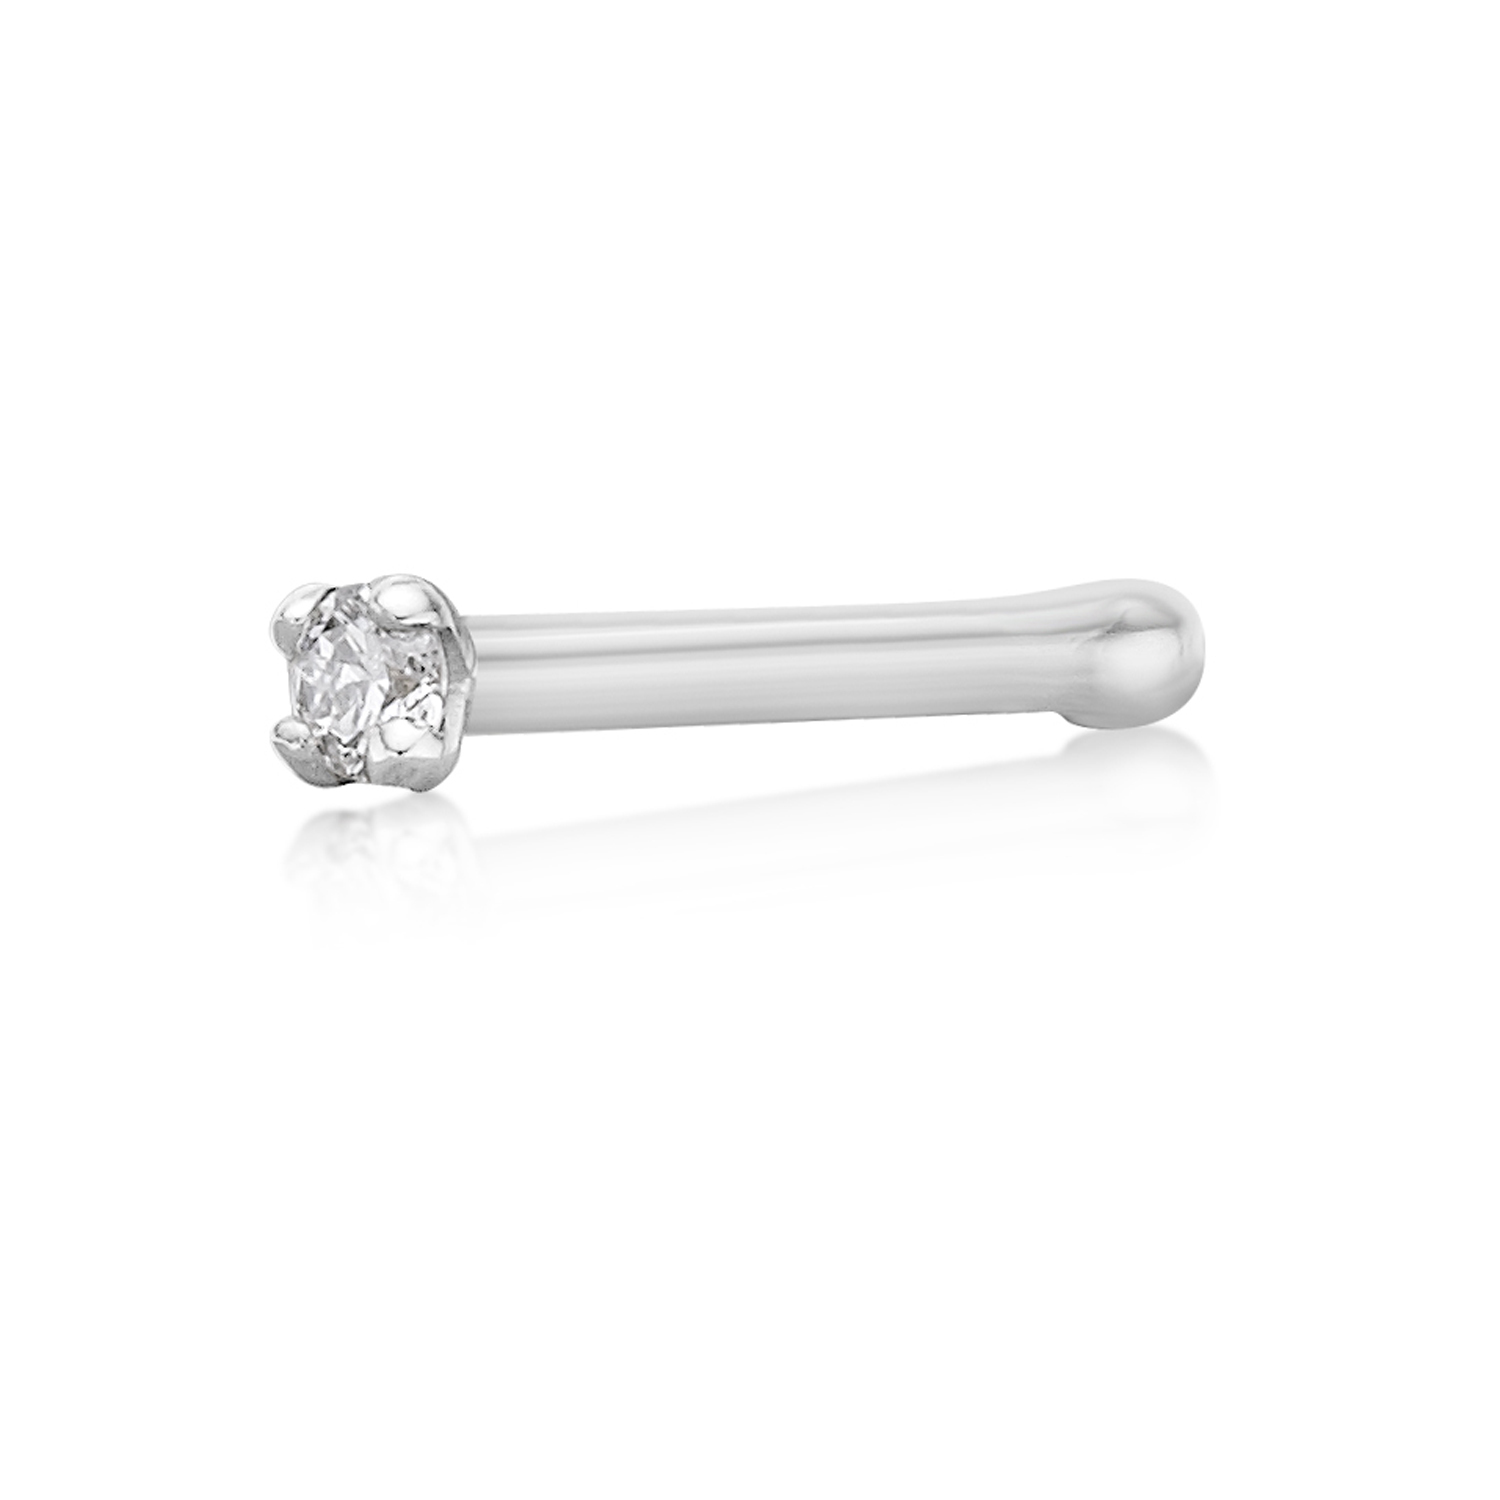 50810-nose-ring-default-collection-white-gold-white-diamond-0-01-h-i2-i3-50810-2.jpg